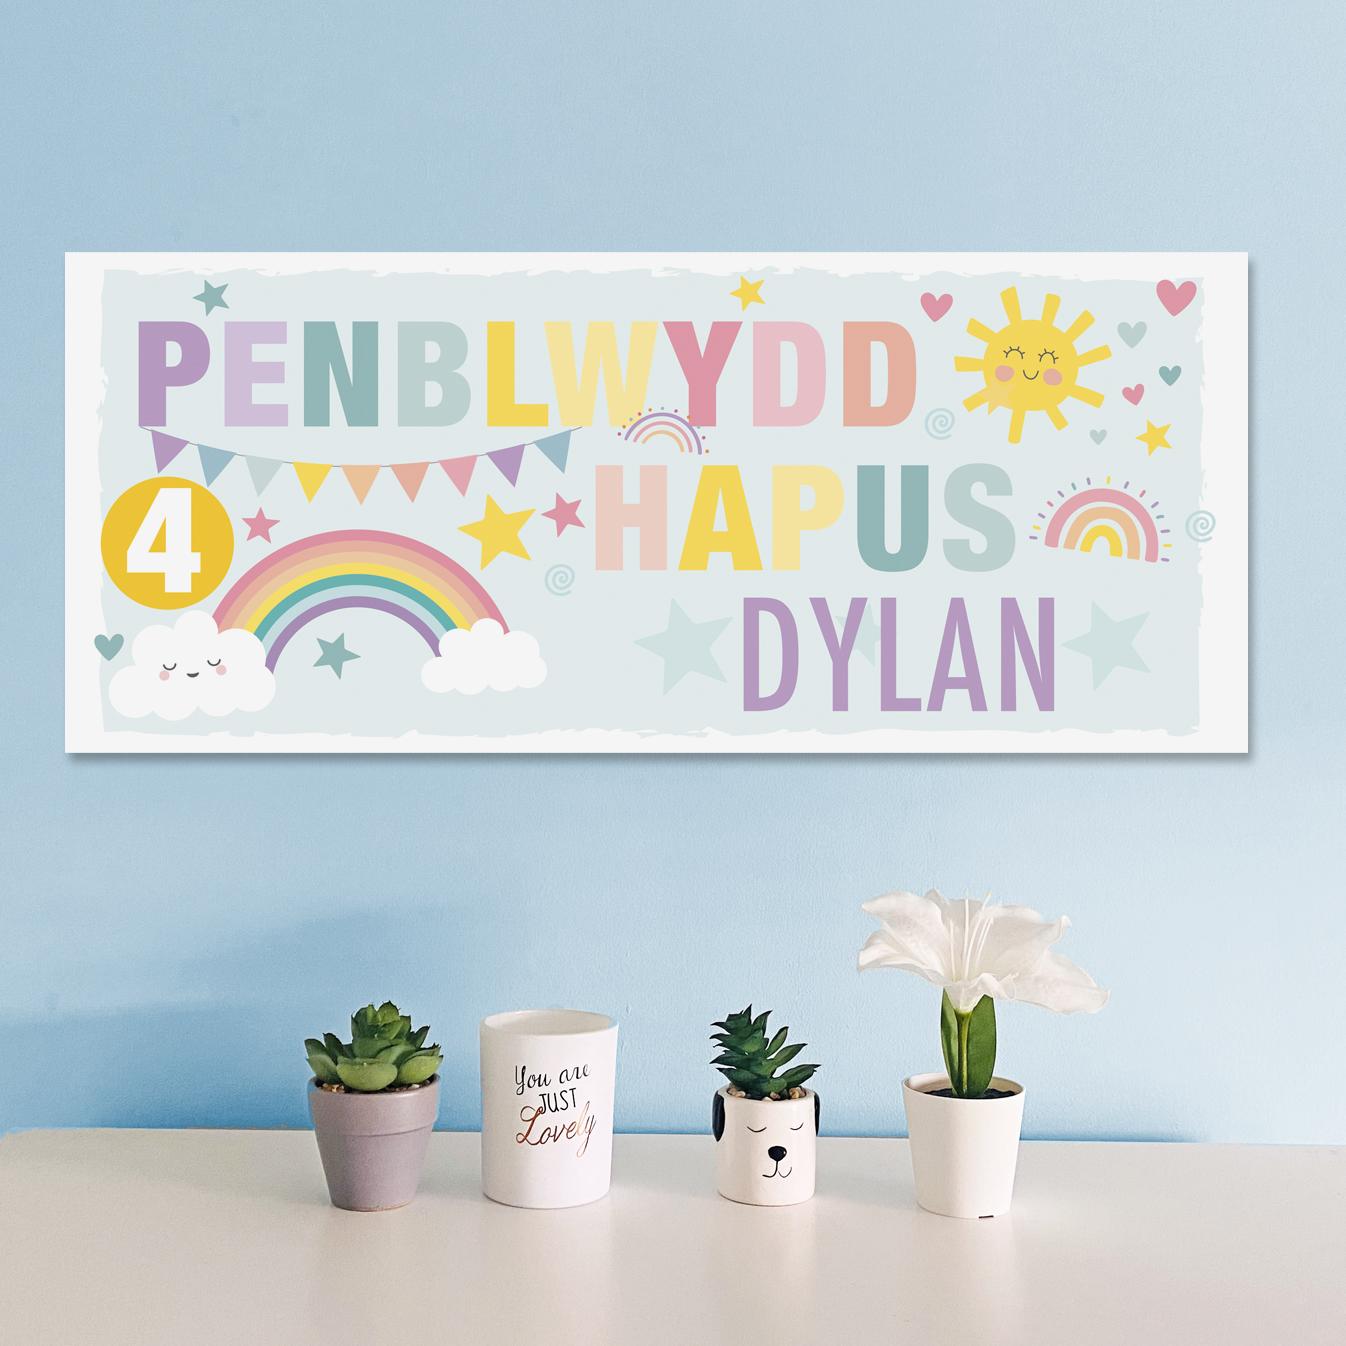 Penblwydd Hapus birthday banners